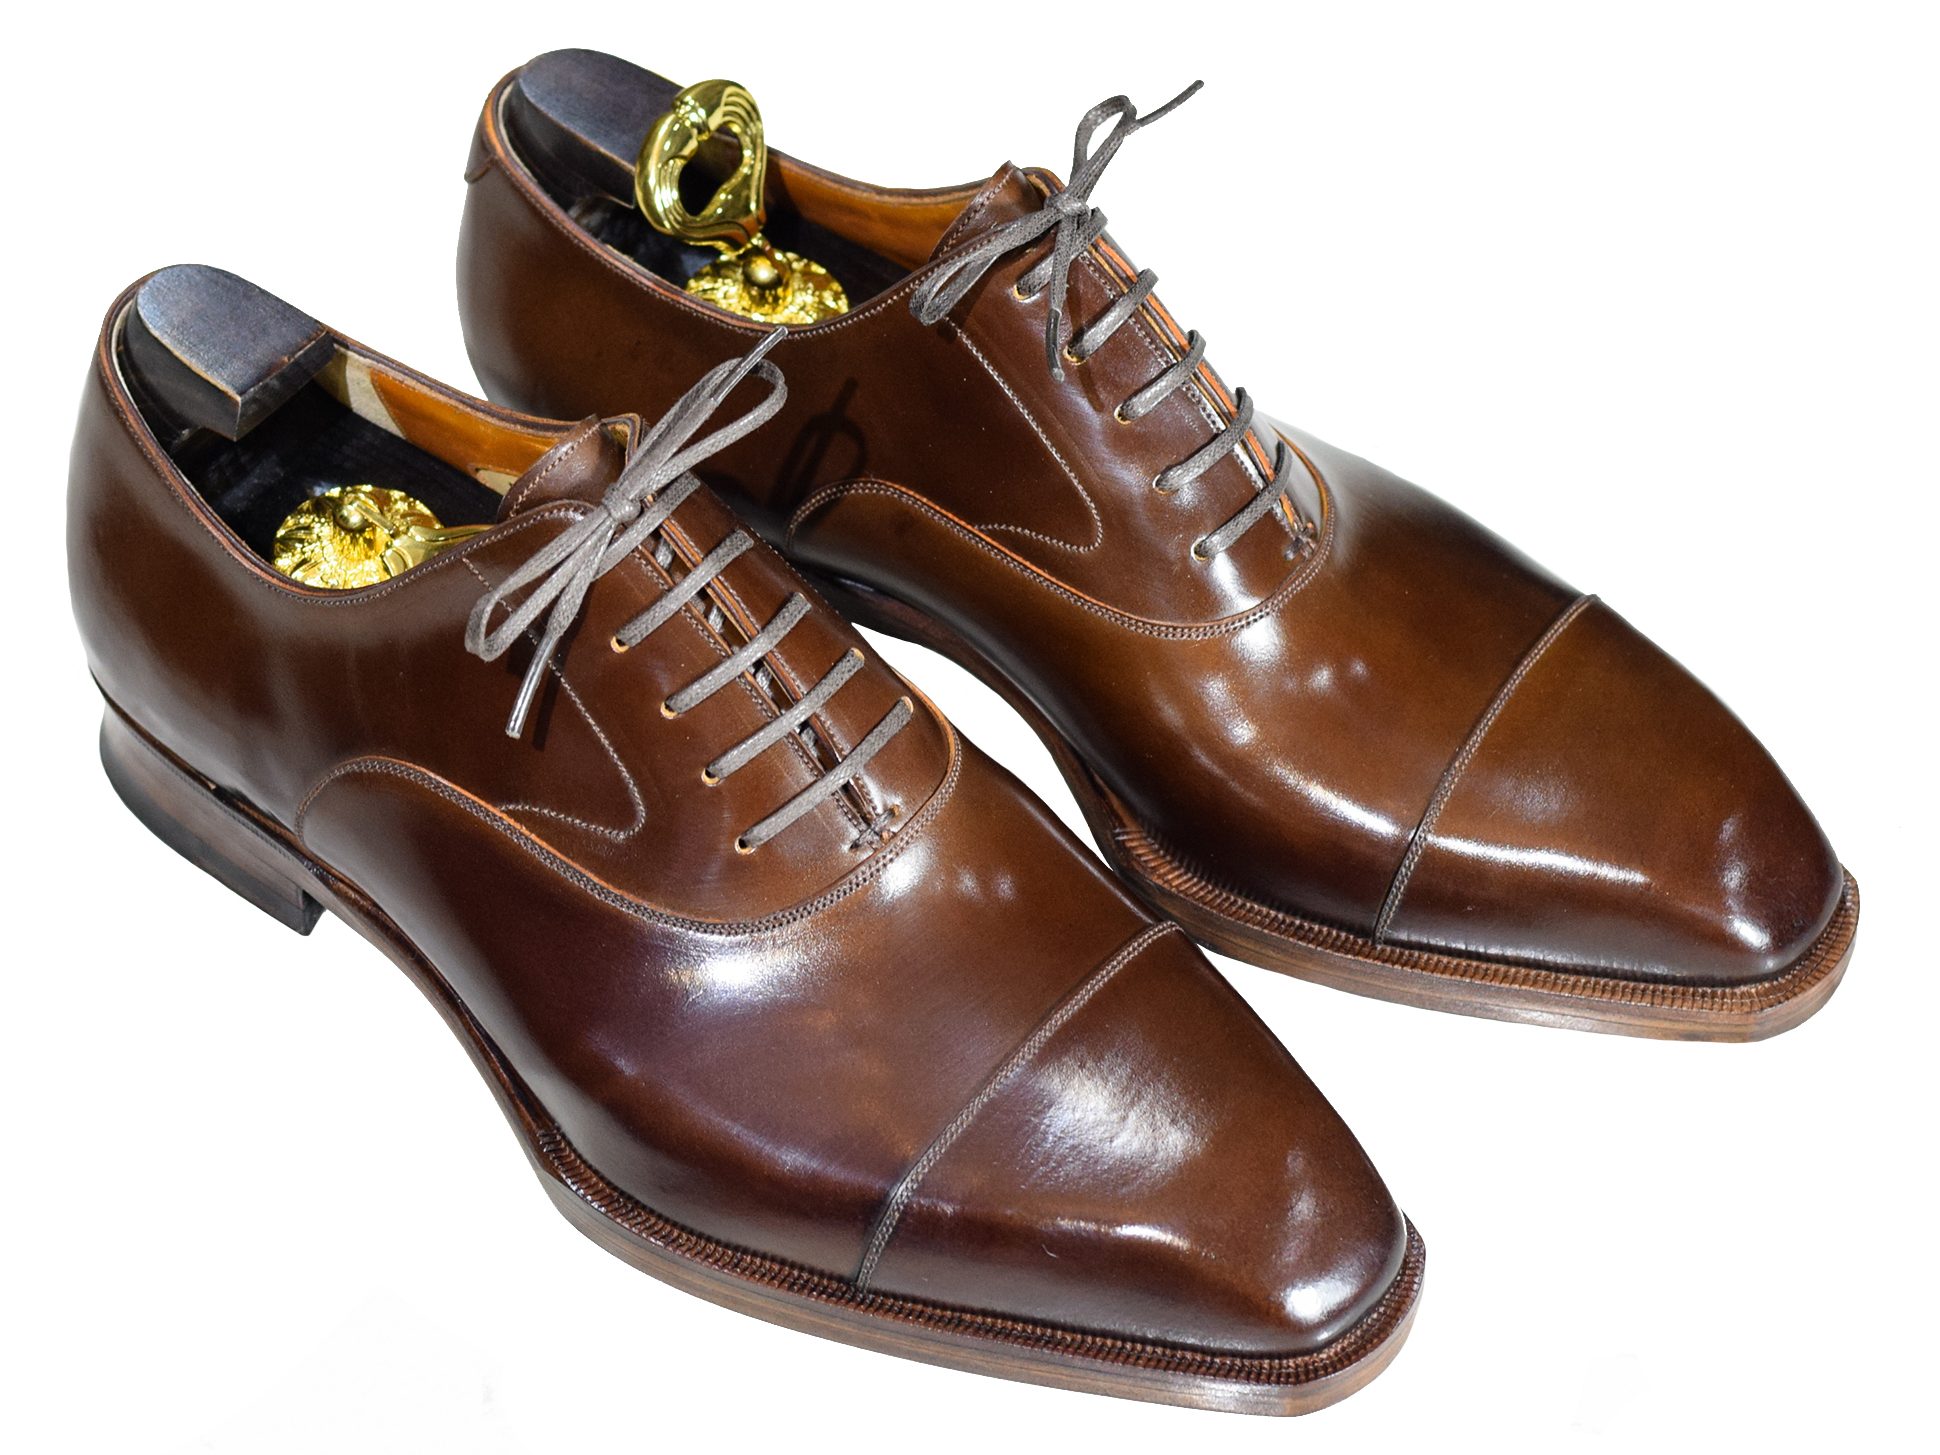 MTO Oxford captoe shoes shell cordovan